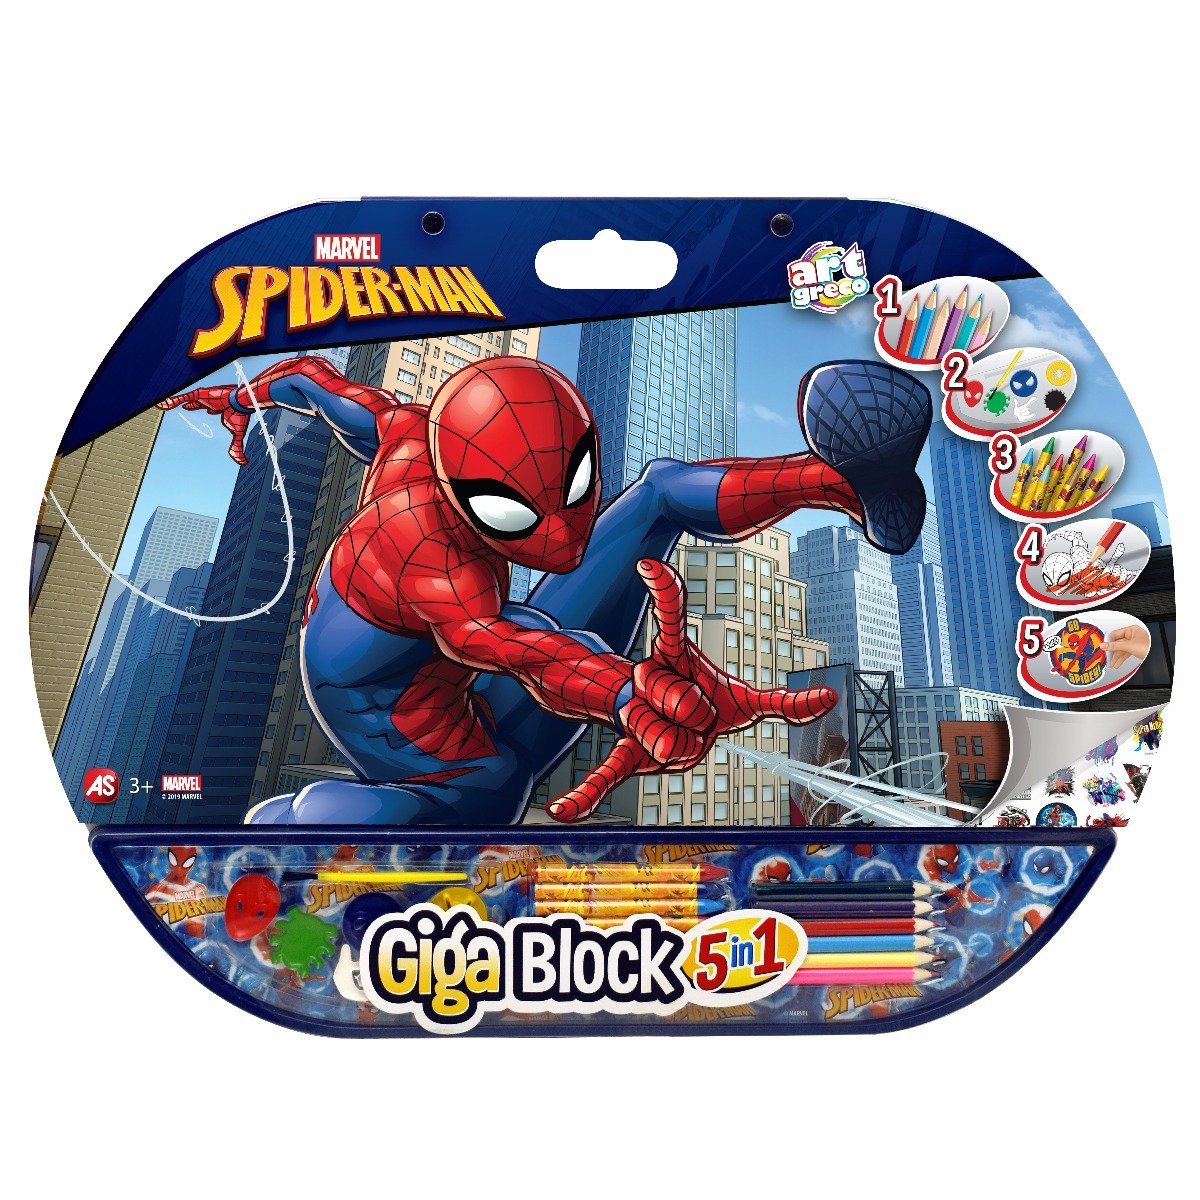 Set desen si accesorii Spiderman Giga Block 5 in 1 noriel.ro imagine noua